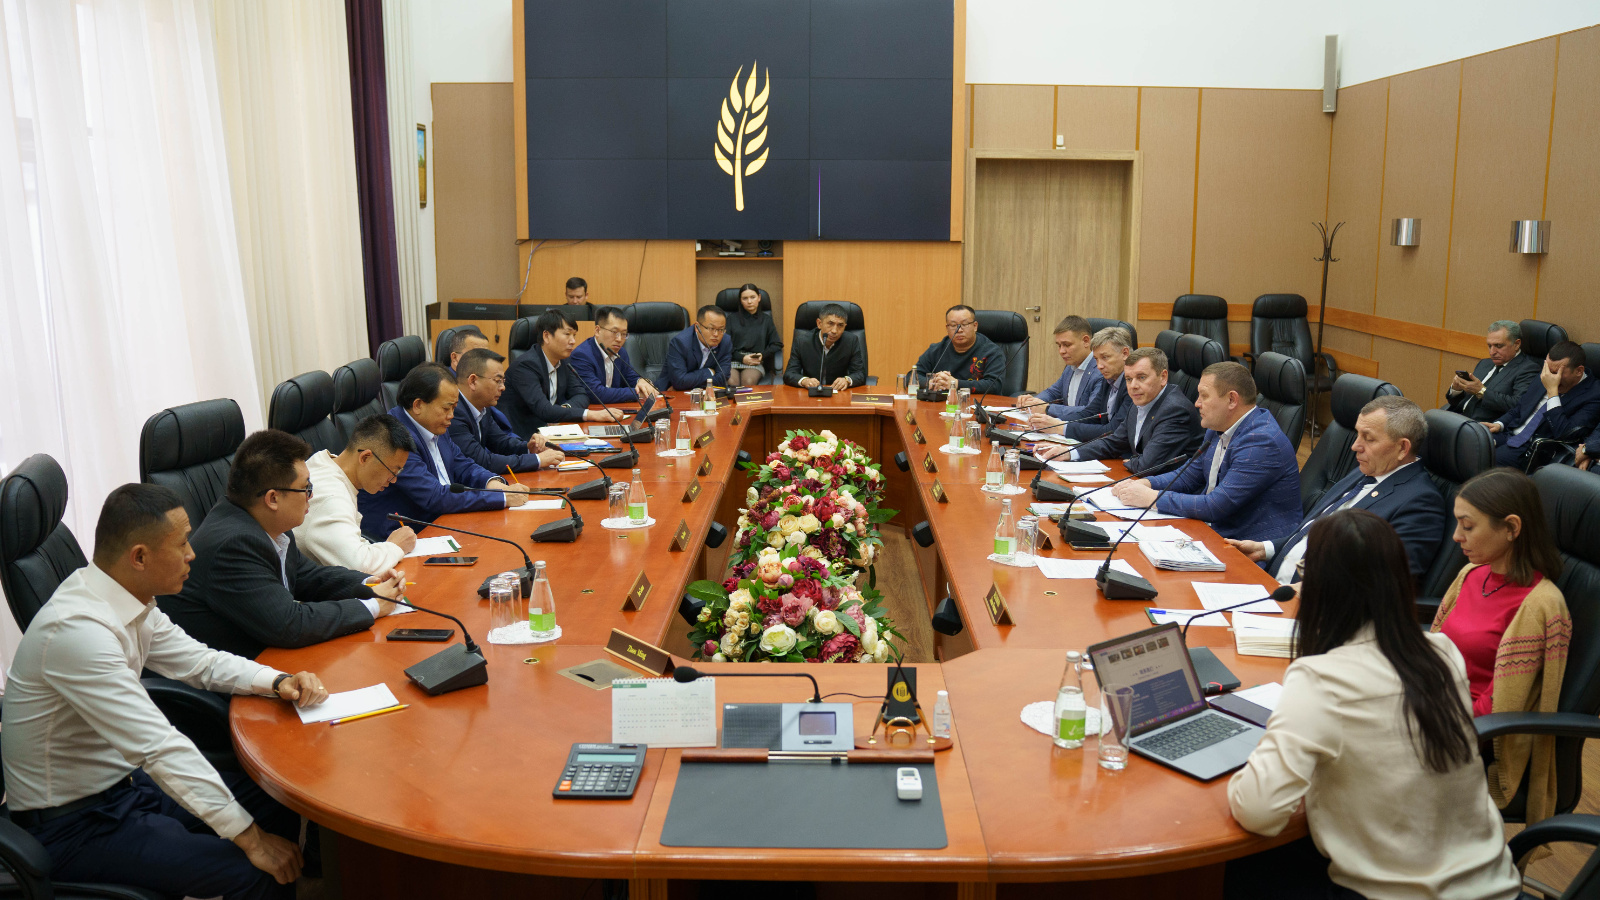 Минсельхозпрод РТ посетила бизнес-делегация из Китайской Народной Республики